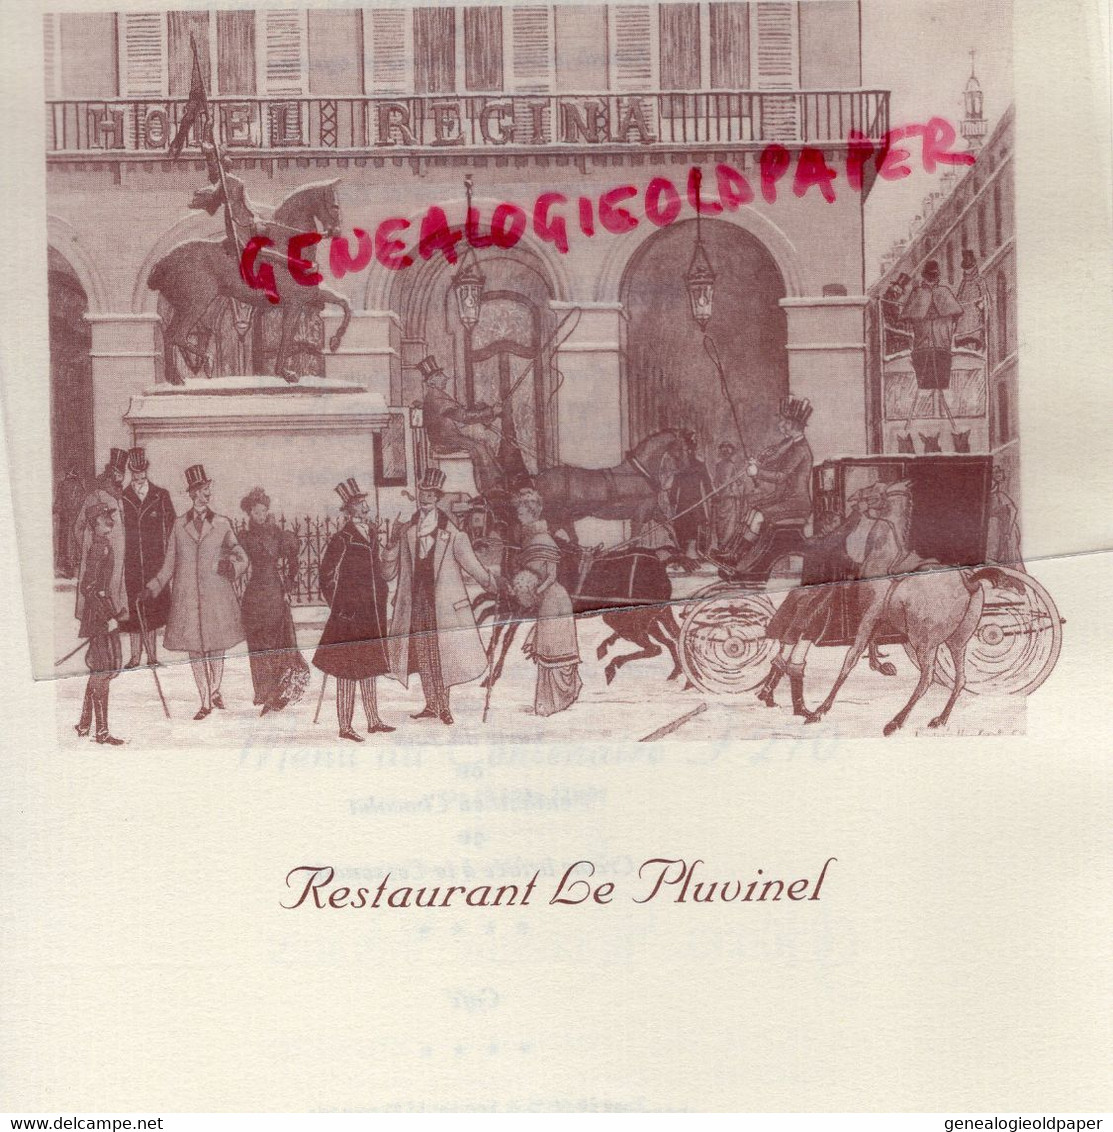 75- PARIS- RARE MENU HOTEL REGINA-2 PLACE PYRAMIDES- RESTAURANT LE PLUVINEL - Menus